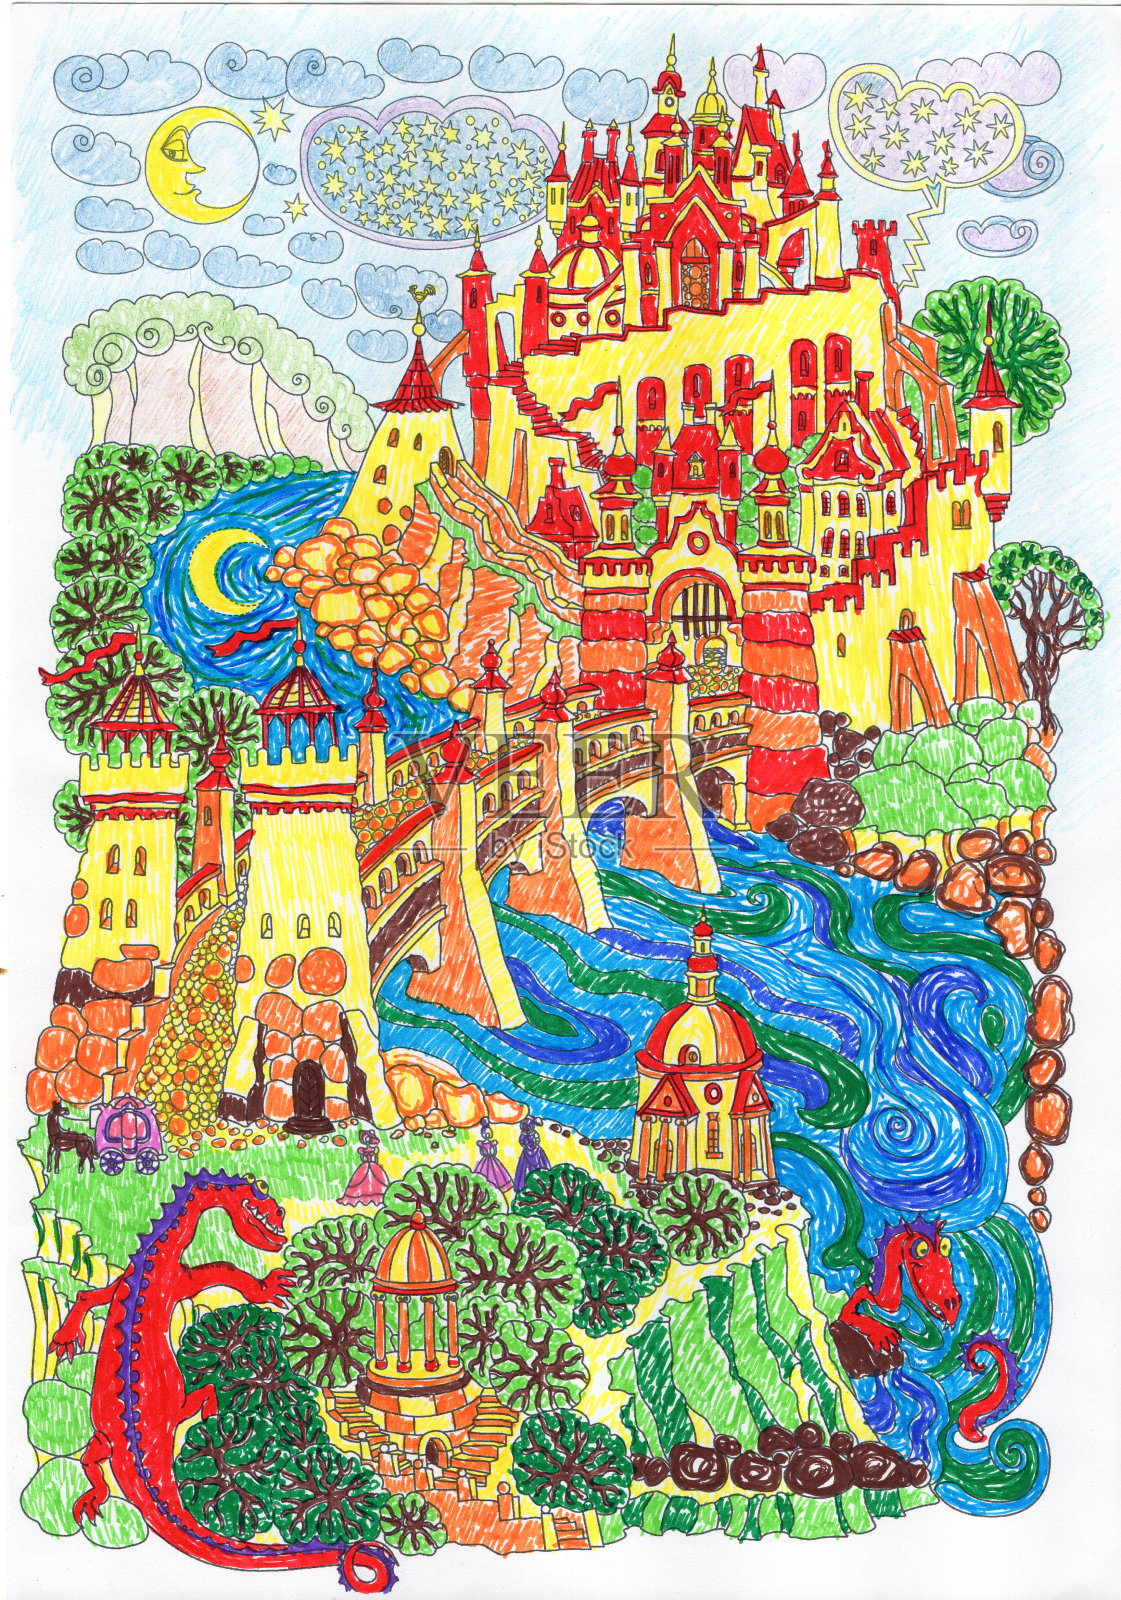 幻想的风景。山上童话般的黄色和红色城堡。奇妙的花园，蓝色的河流，石拱桥。有趣的龙，马车。t恤打印。专辑封面。用鲜艳的颜色手绘插画图片素材